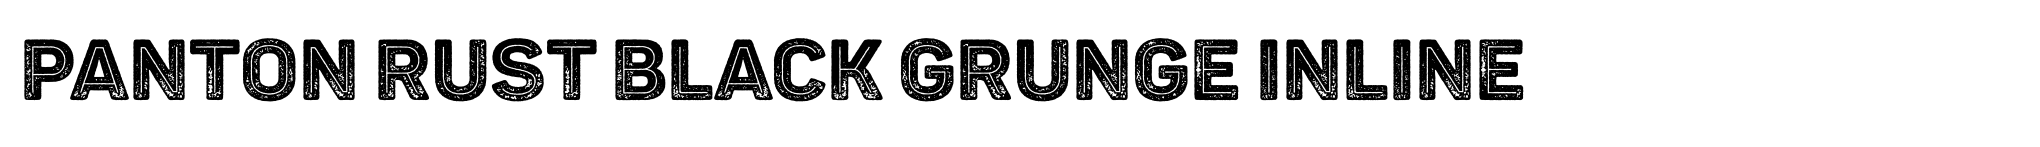 Panton Rust Black Grunge Inline image